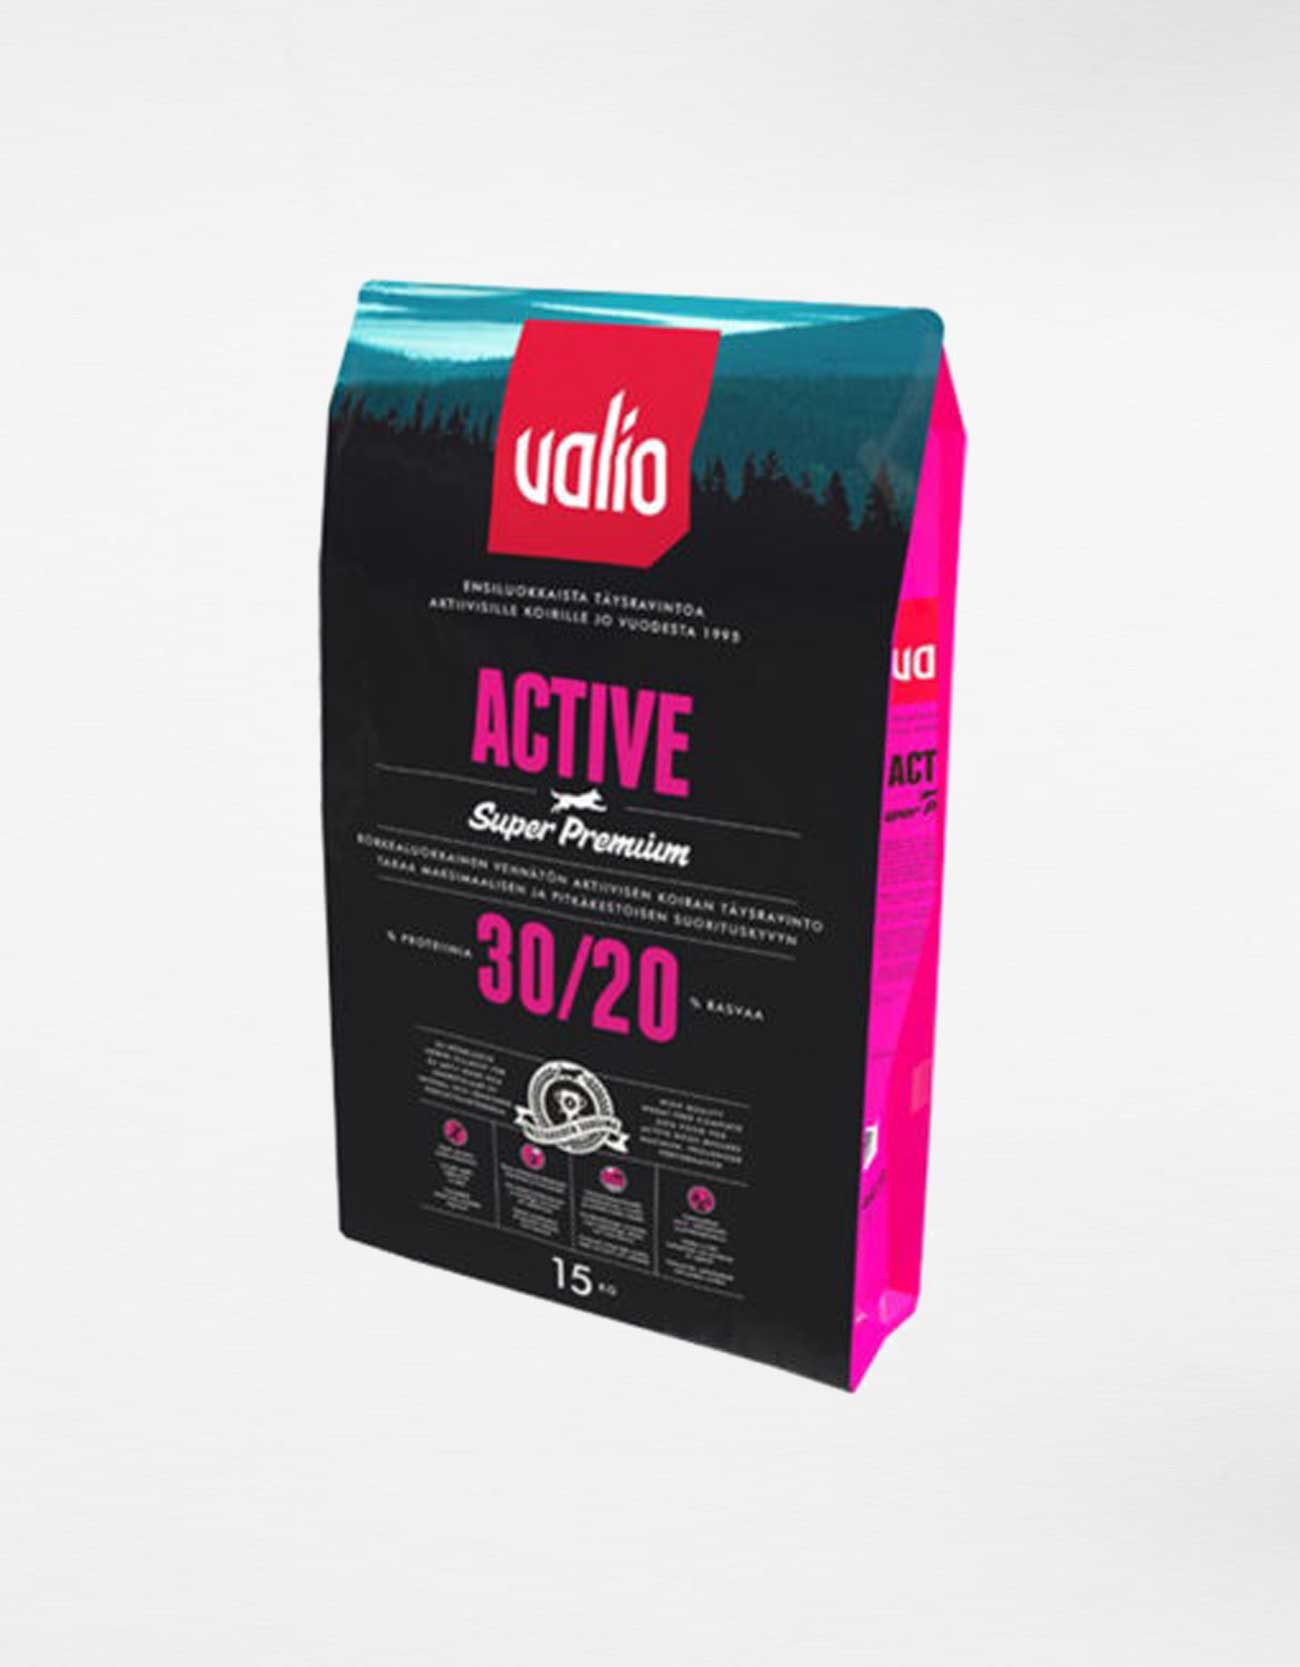 Valio Active 30/20 - Jokkerit Trading Oy